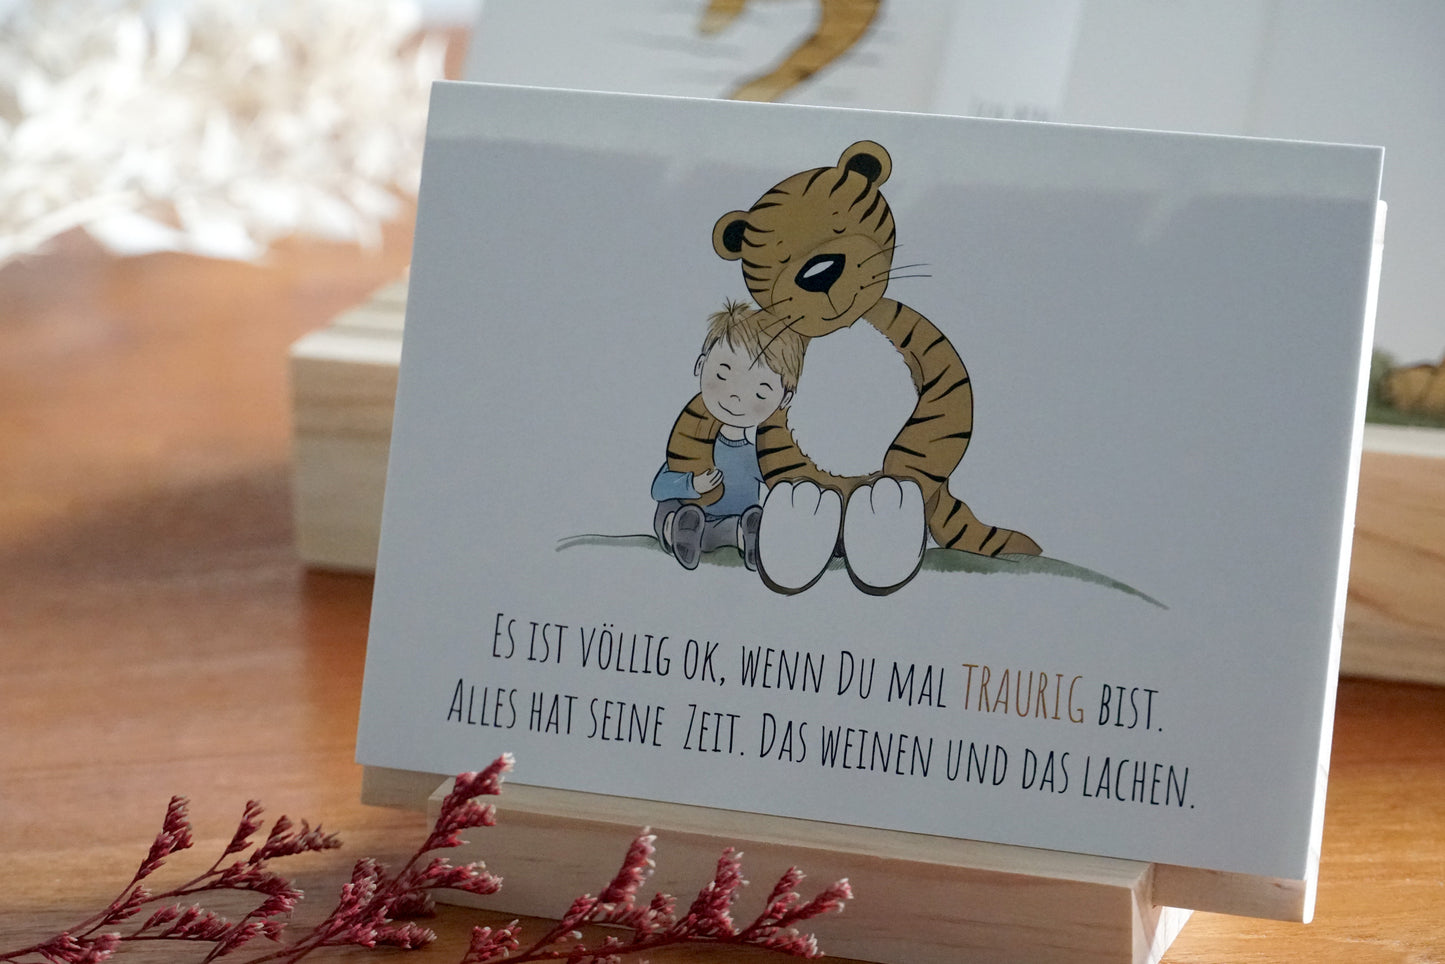 Trost-Tiger Postkarte mit Spruch "Es ist völlig ok, wenn du mal traurig bist"